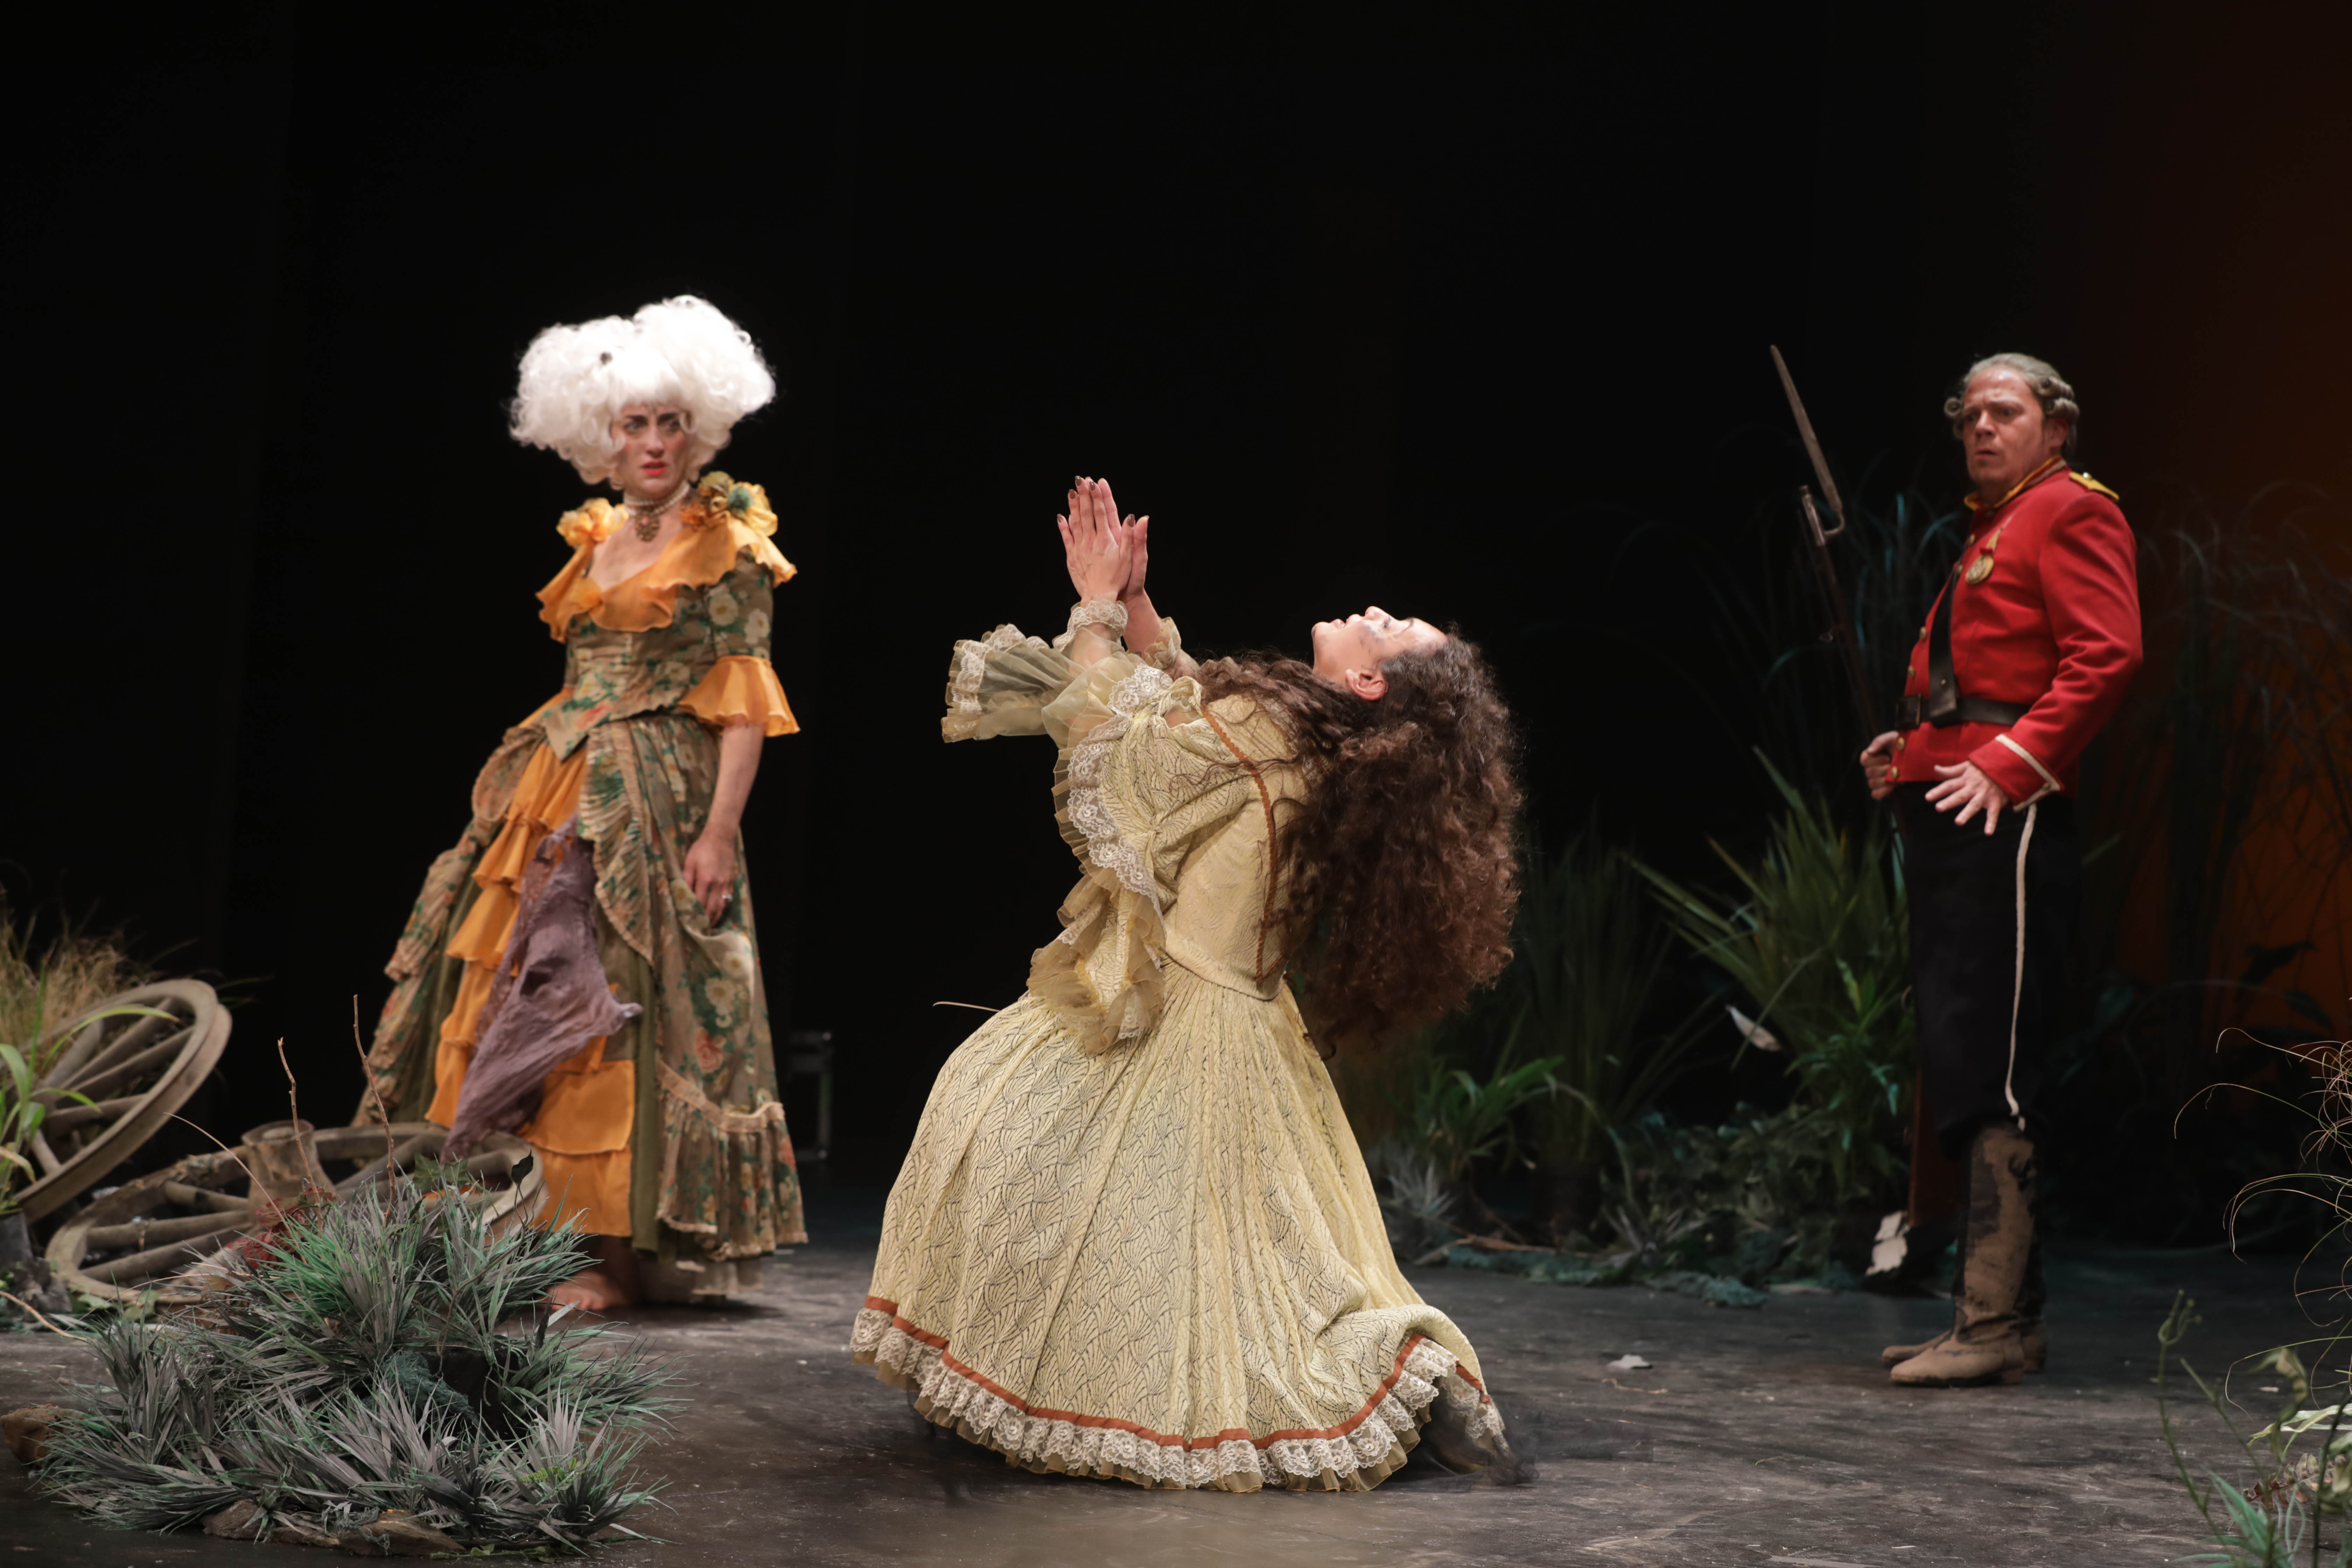 Canal Encuentro estrena una nueva obra teatral en el ciclo "Encuentro con el Cervantes"